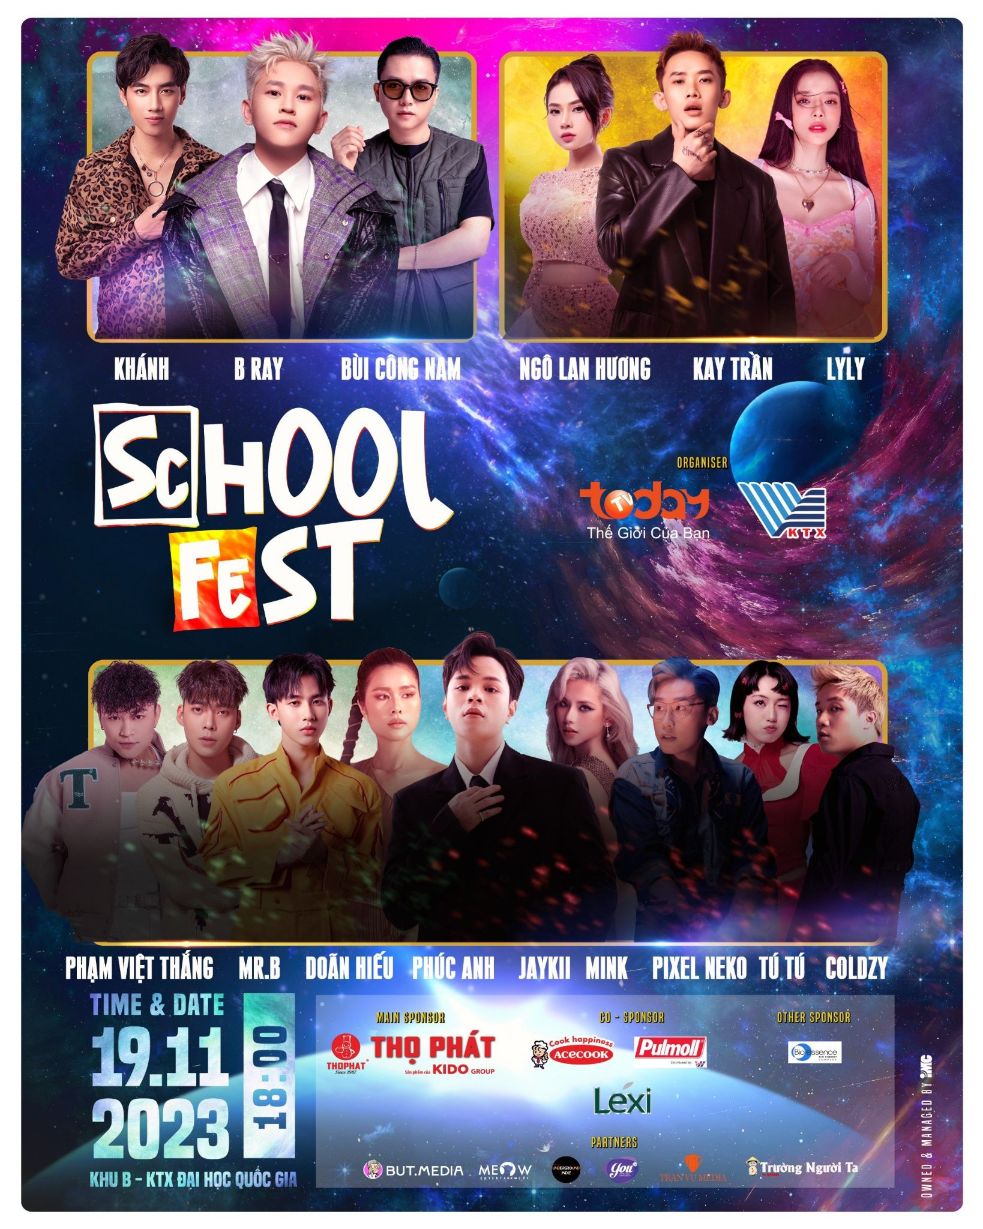 Vũ trụ School Fest 2 2 ‘Vũ trụ School Fest’ chính thức trở lại, không có đặc sắc nhất chỉ có đặc sắc hơn!